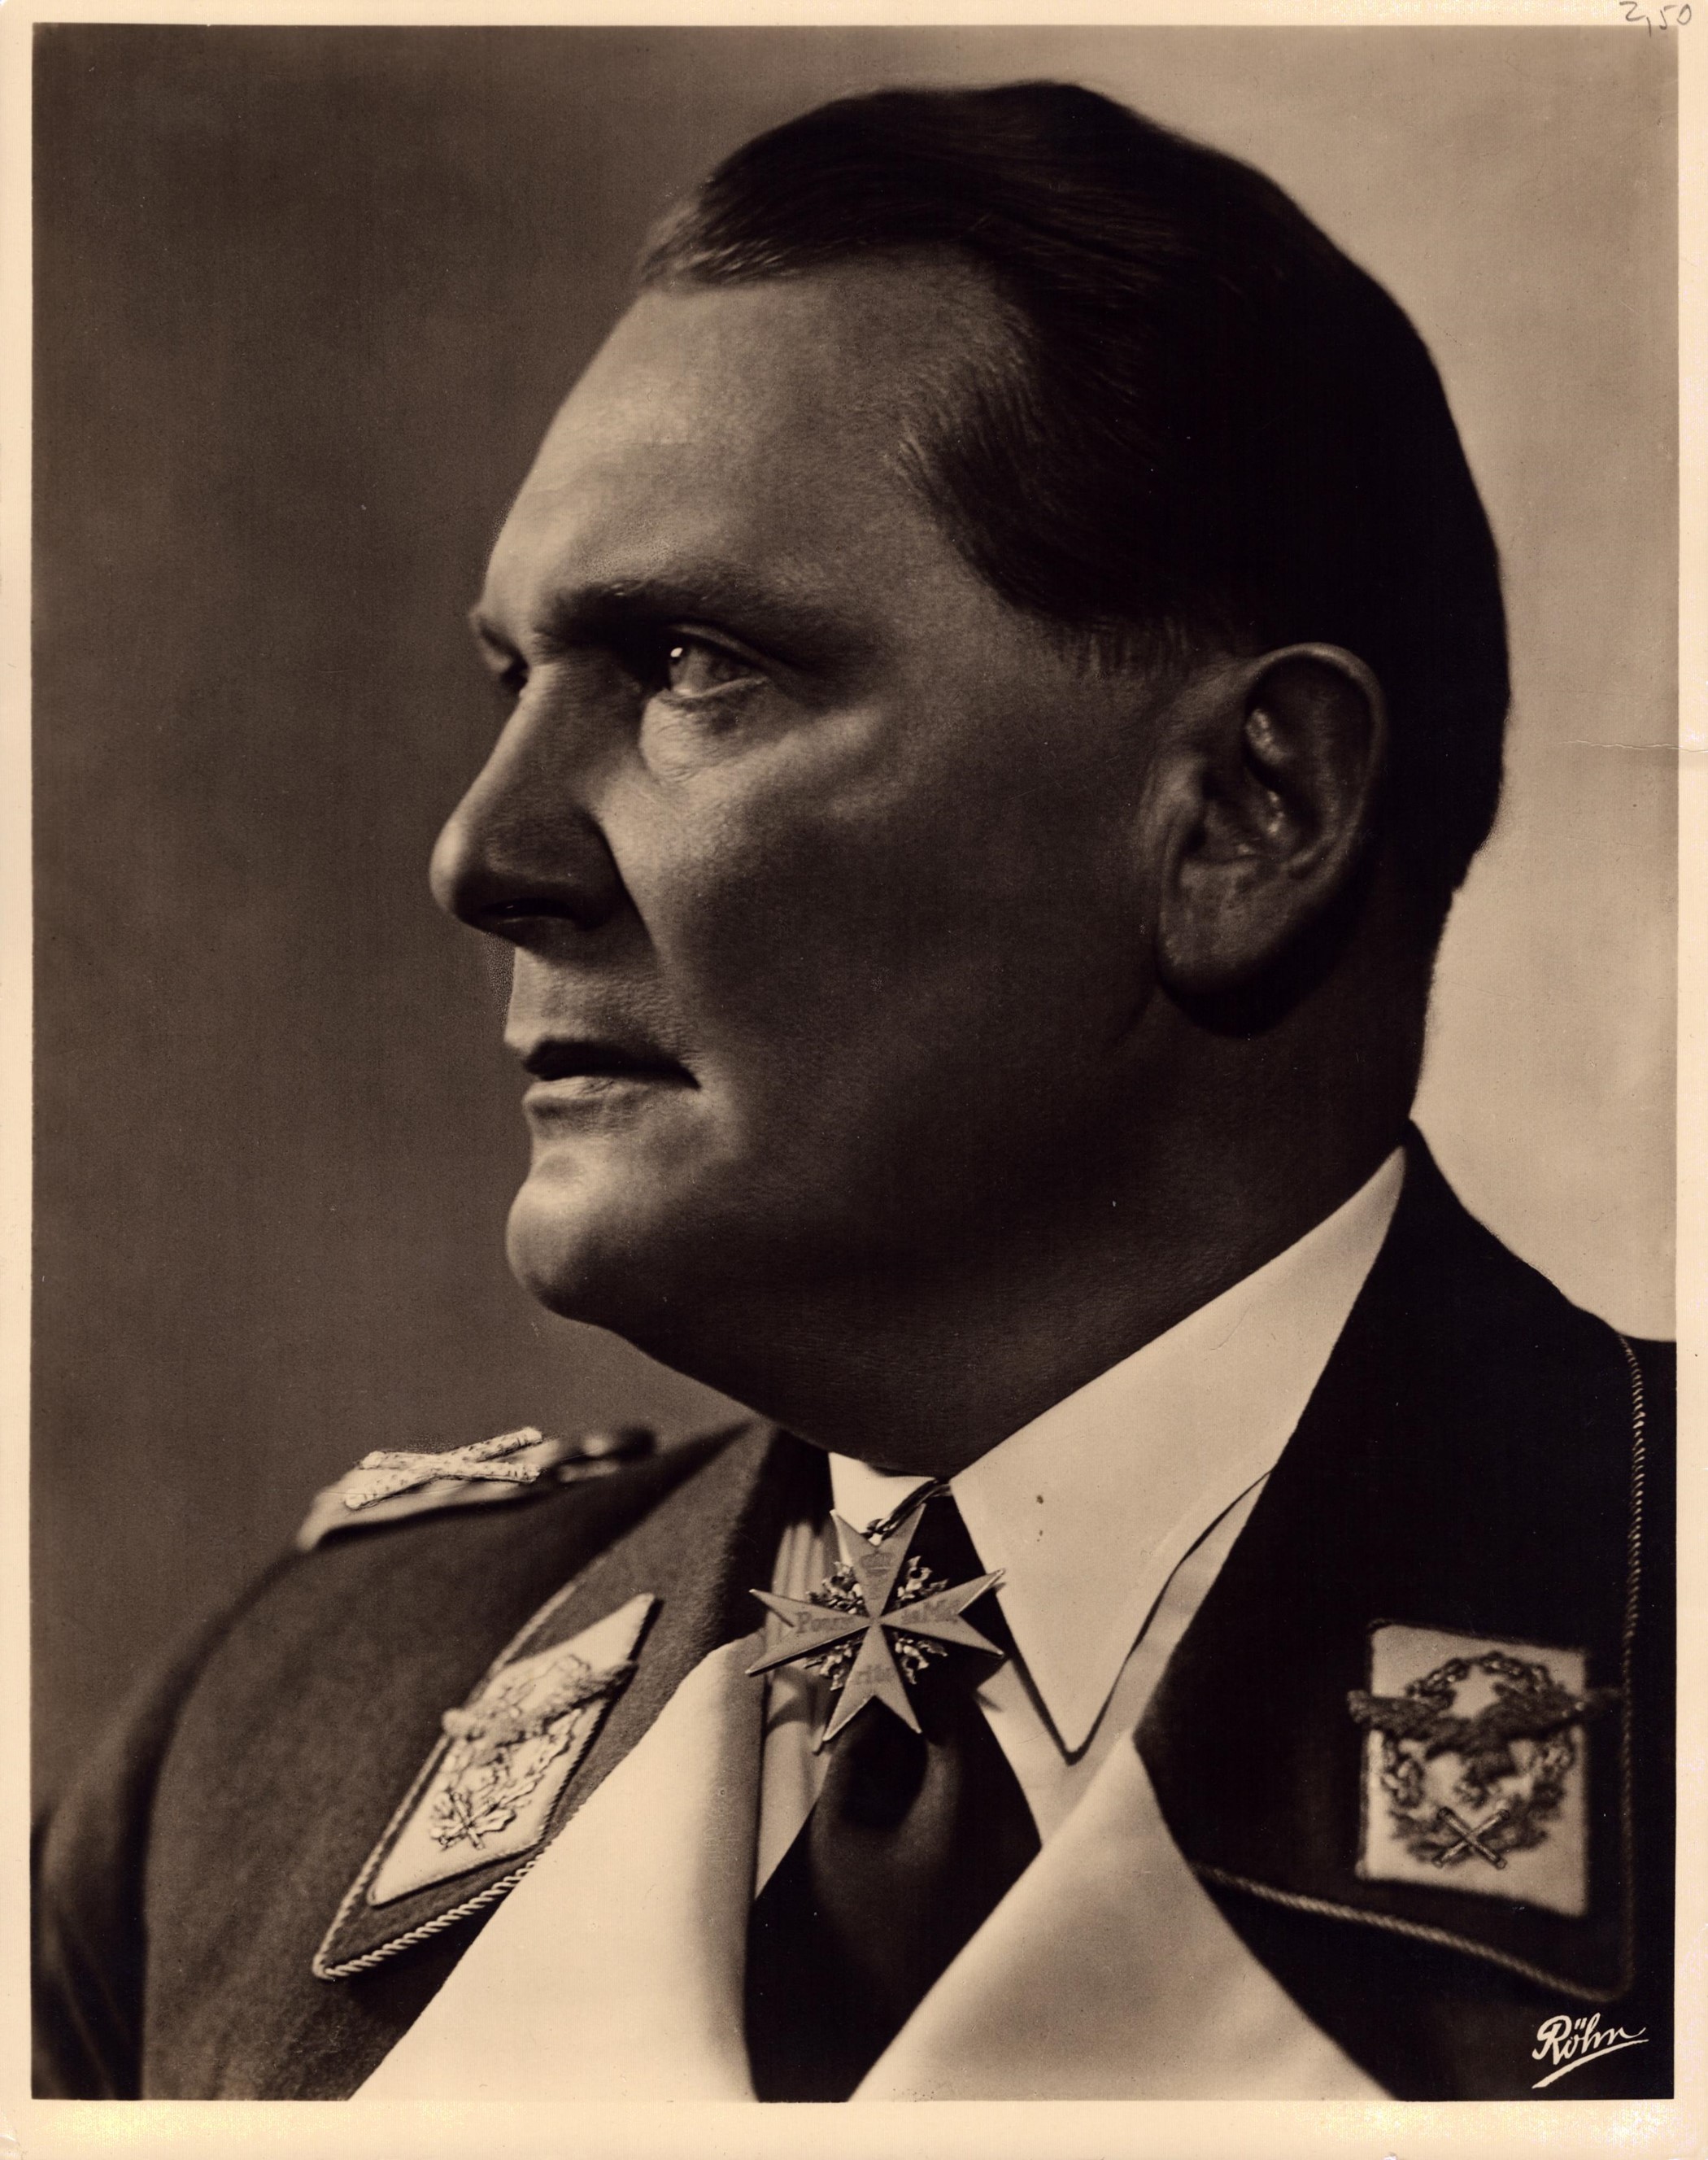 Hermann Göring 12x9.5 inch unsigned original black and white photo. Hermann Wilhelm Göring (12